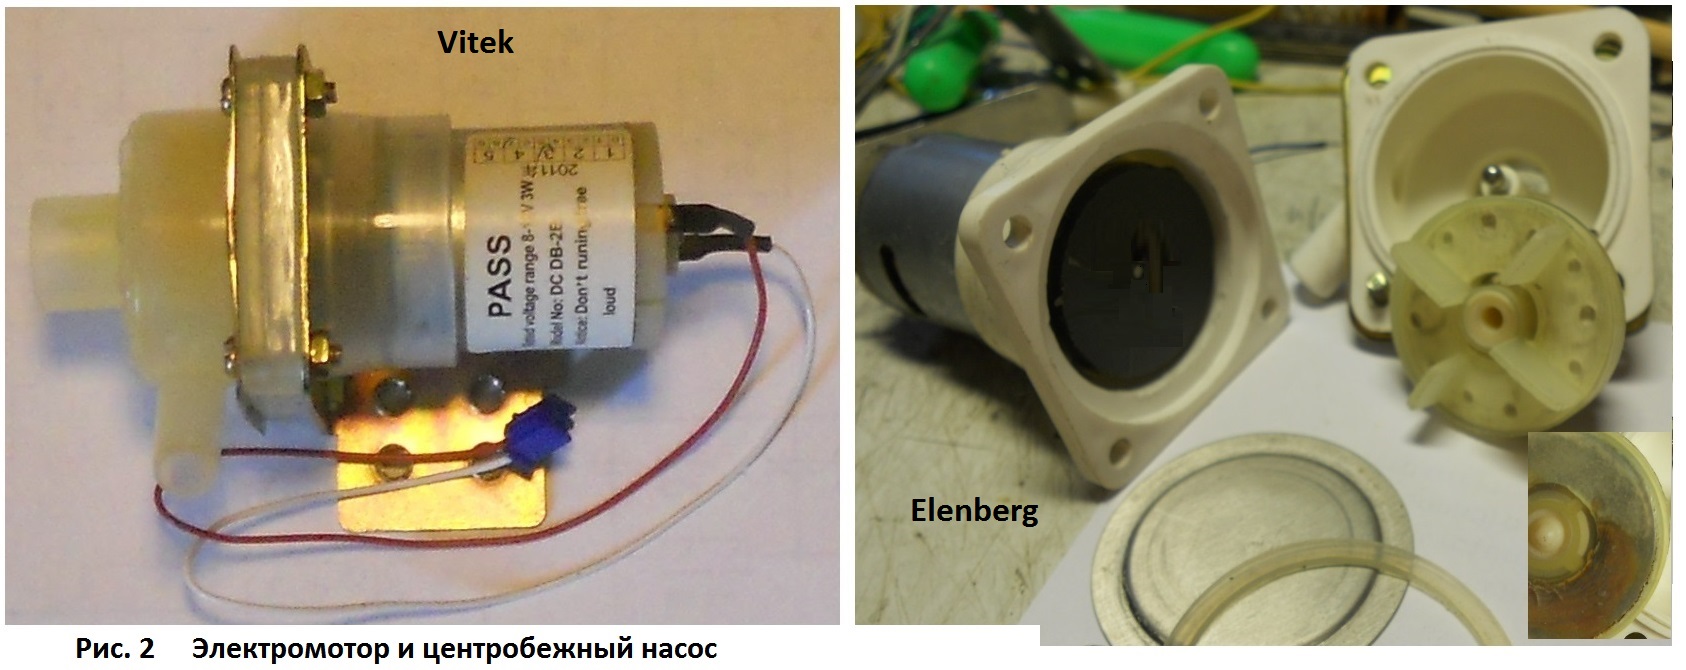 Схемы и ремонт электрочайников — термопотов